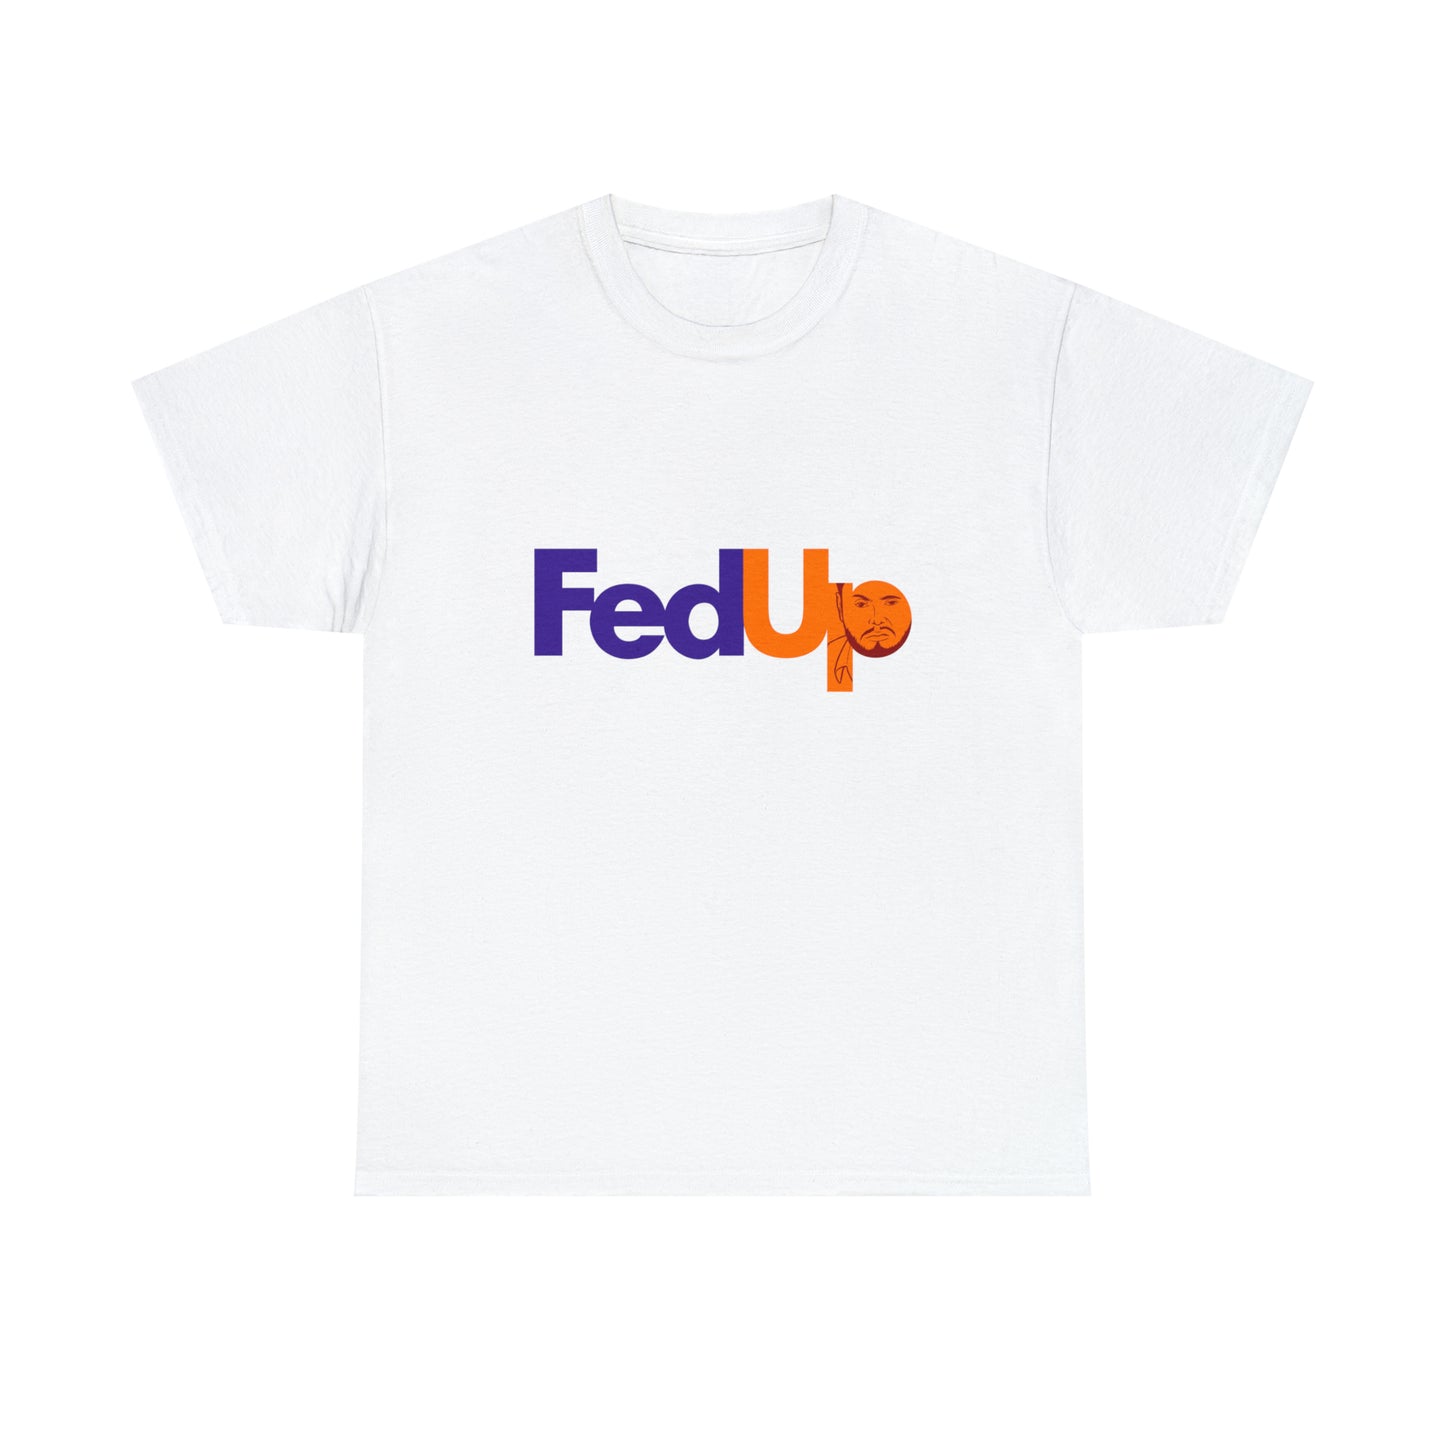 Custom Parody T-shirt, Fed-up design